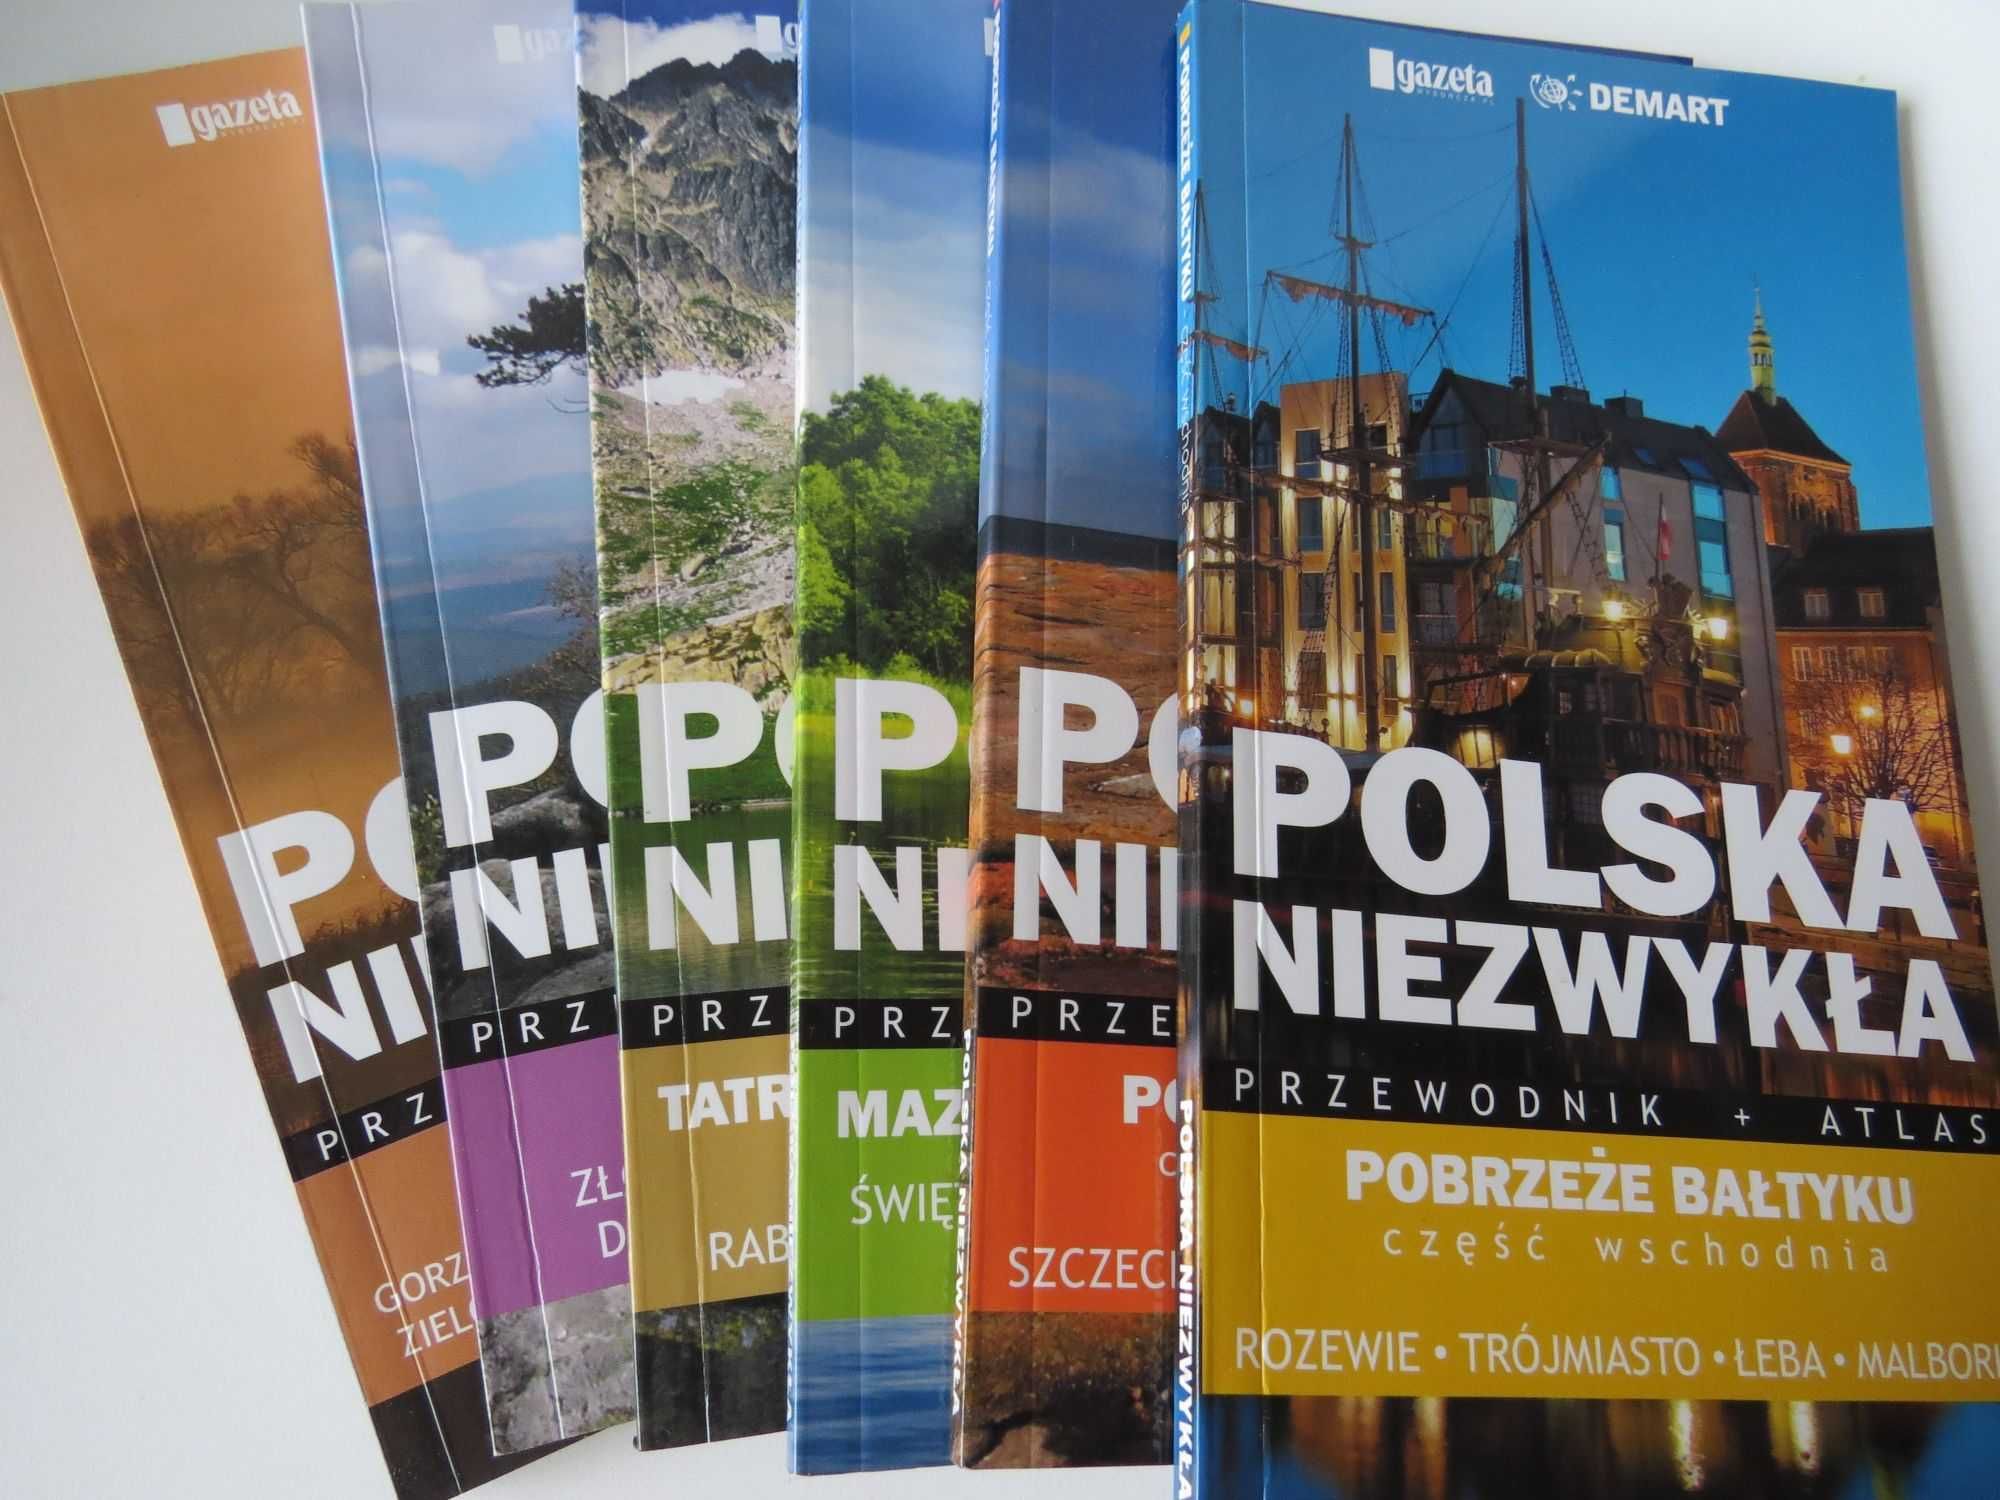 Polska Niezwykła przewodniki atlasy 5 tomów